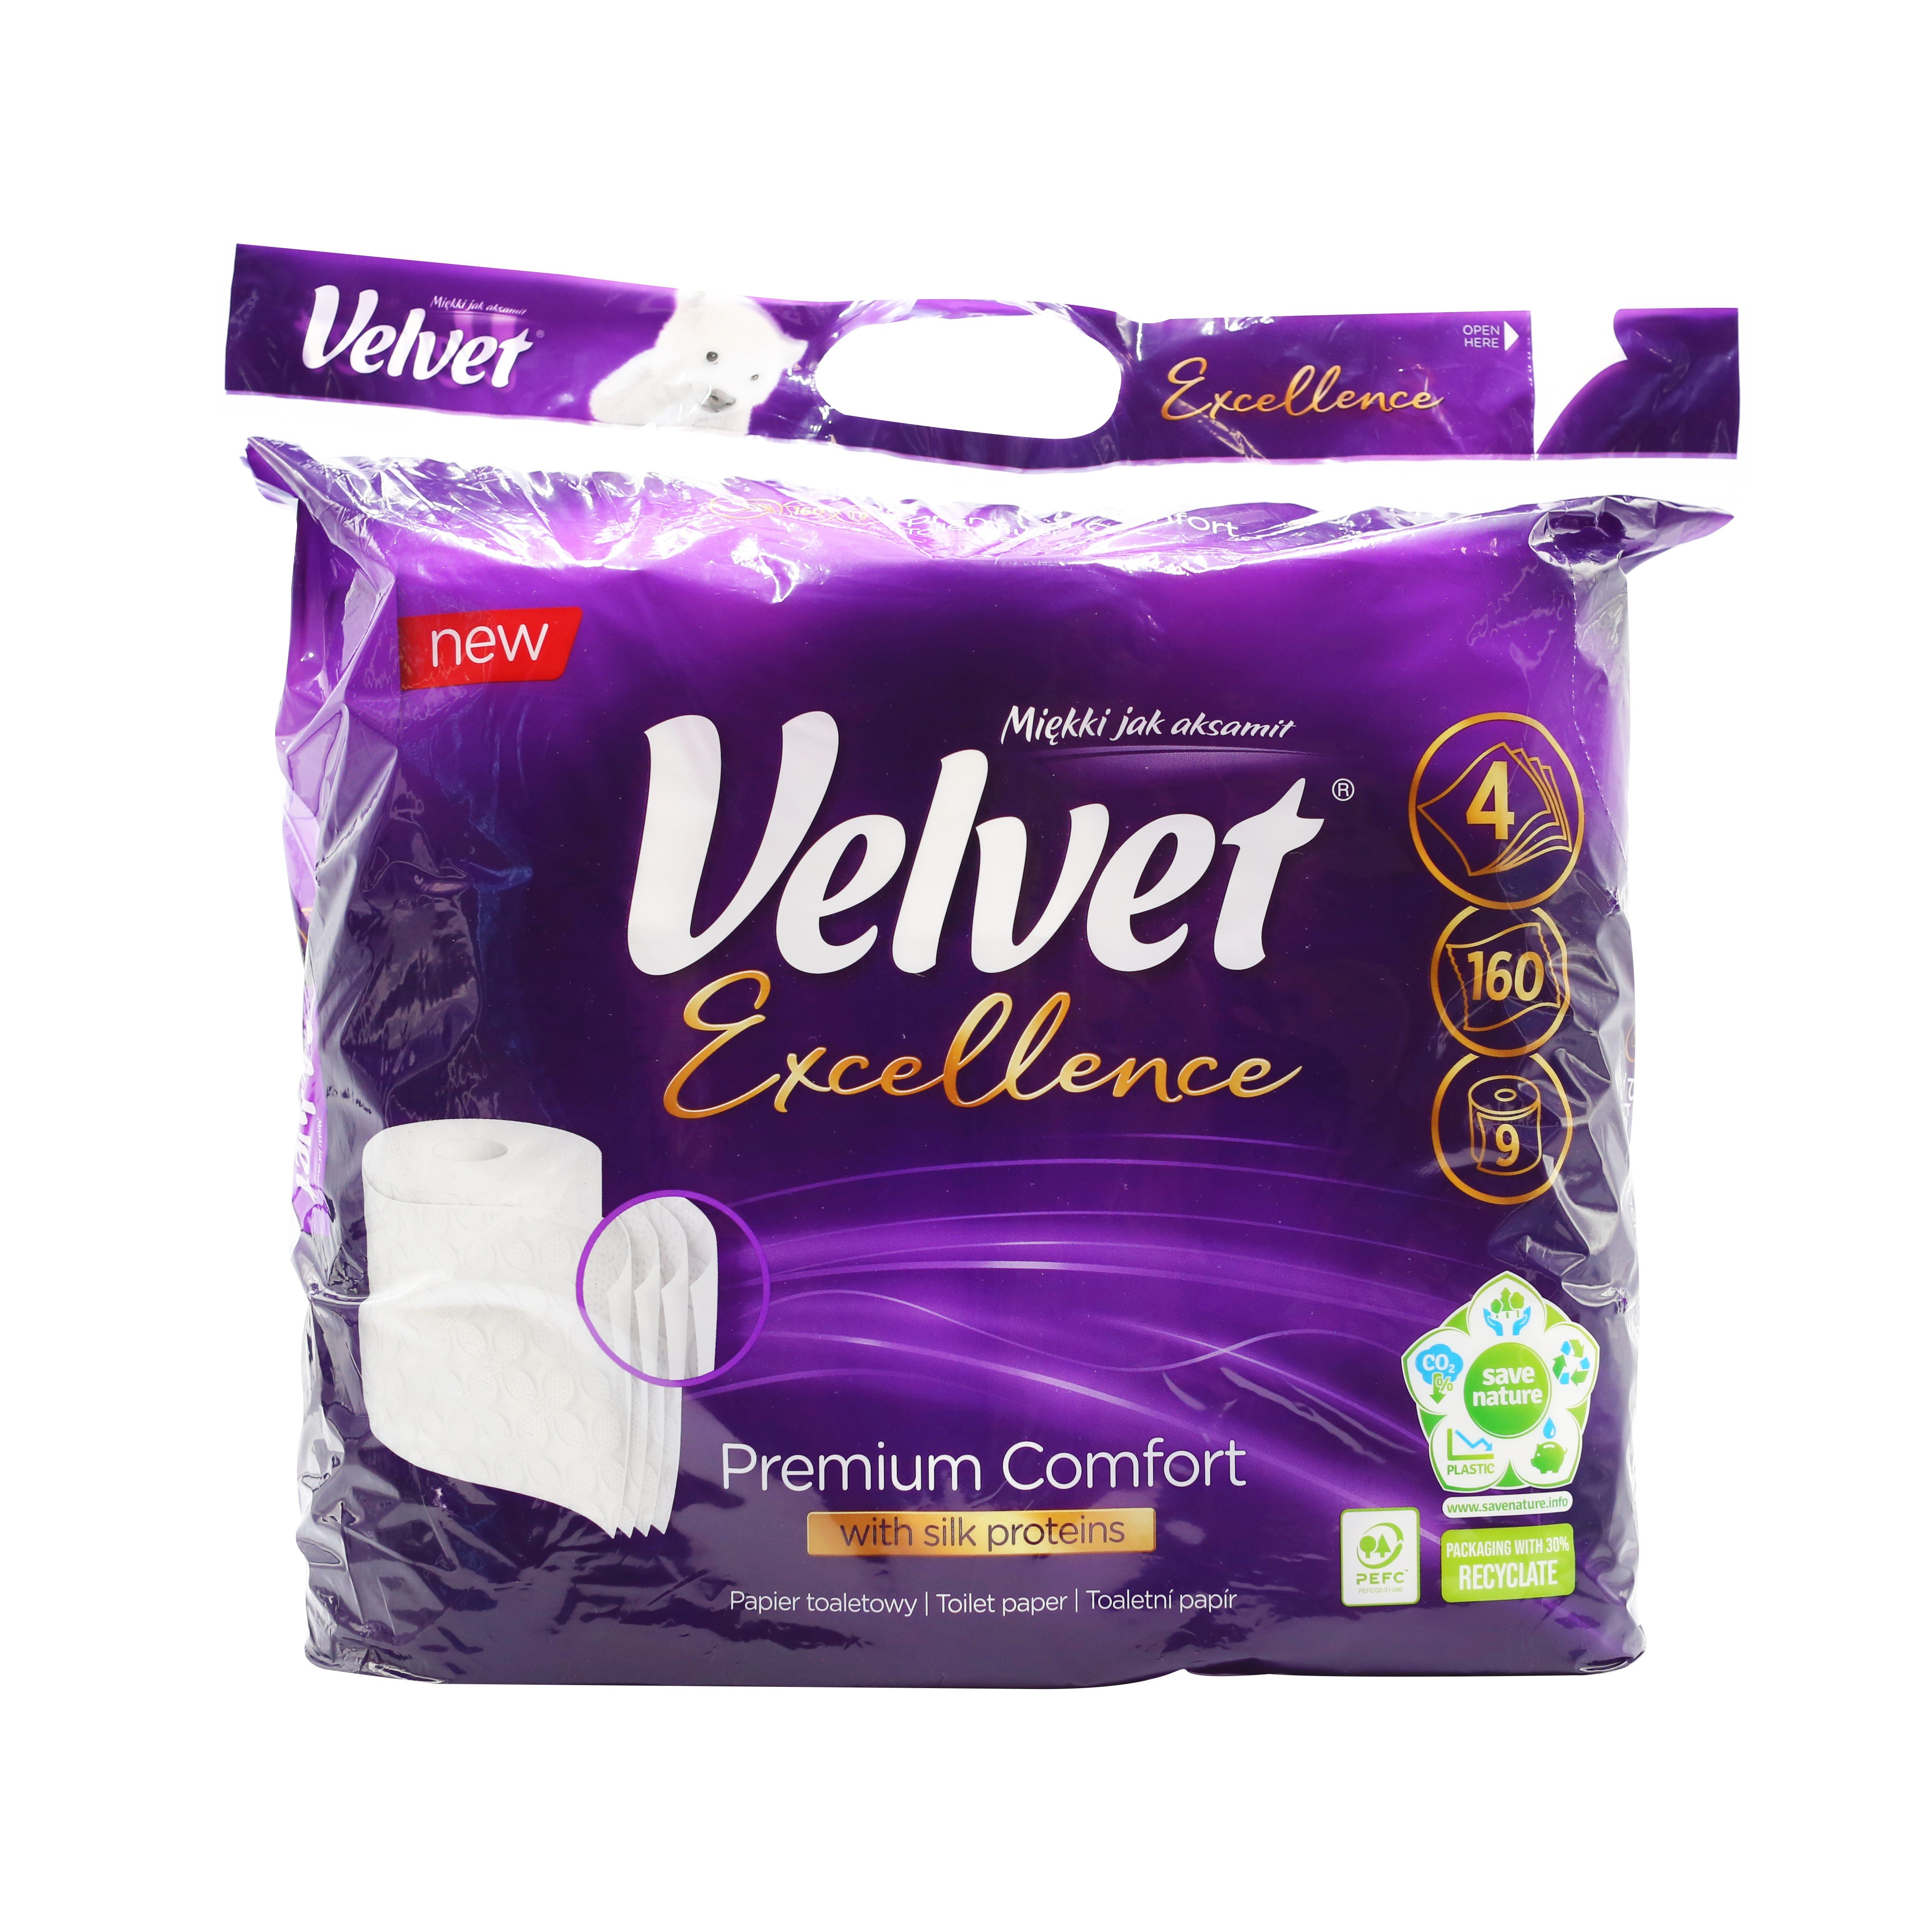 Туалетная бумага Velvet Excellence Silk Proteins, 160 отрывов, 9 рулонов - фото 1